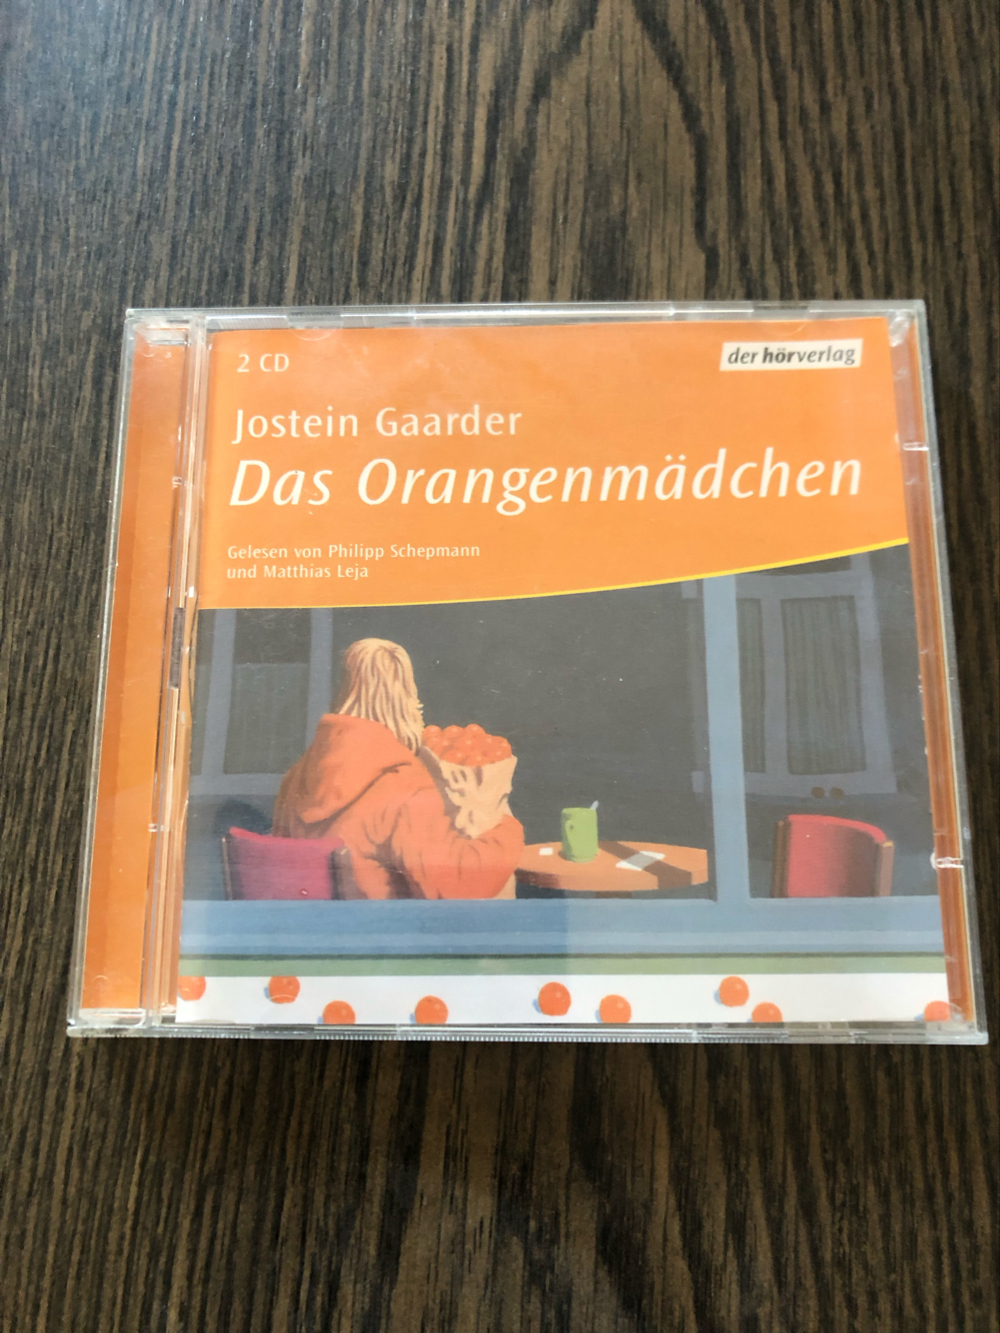 2 CDs: Das Orangenmädchen, Jostein Gaarder